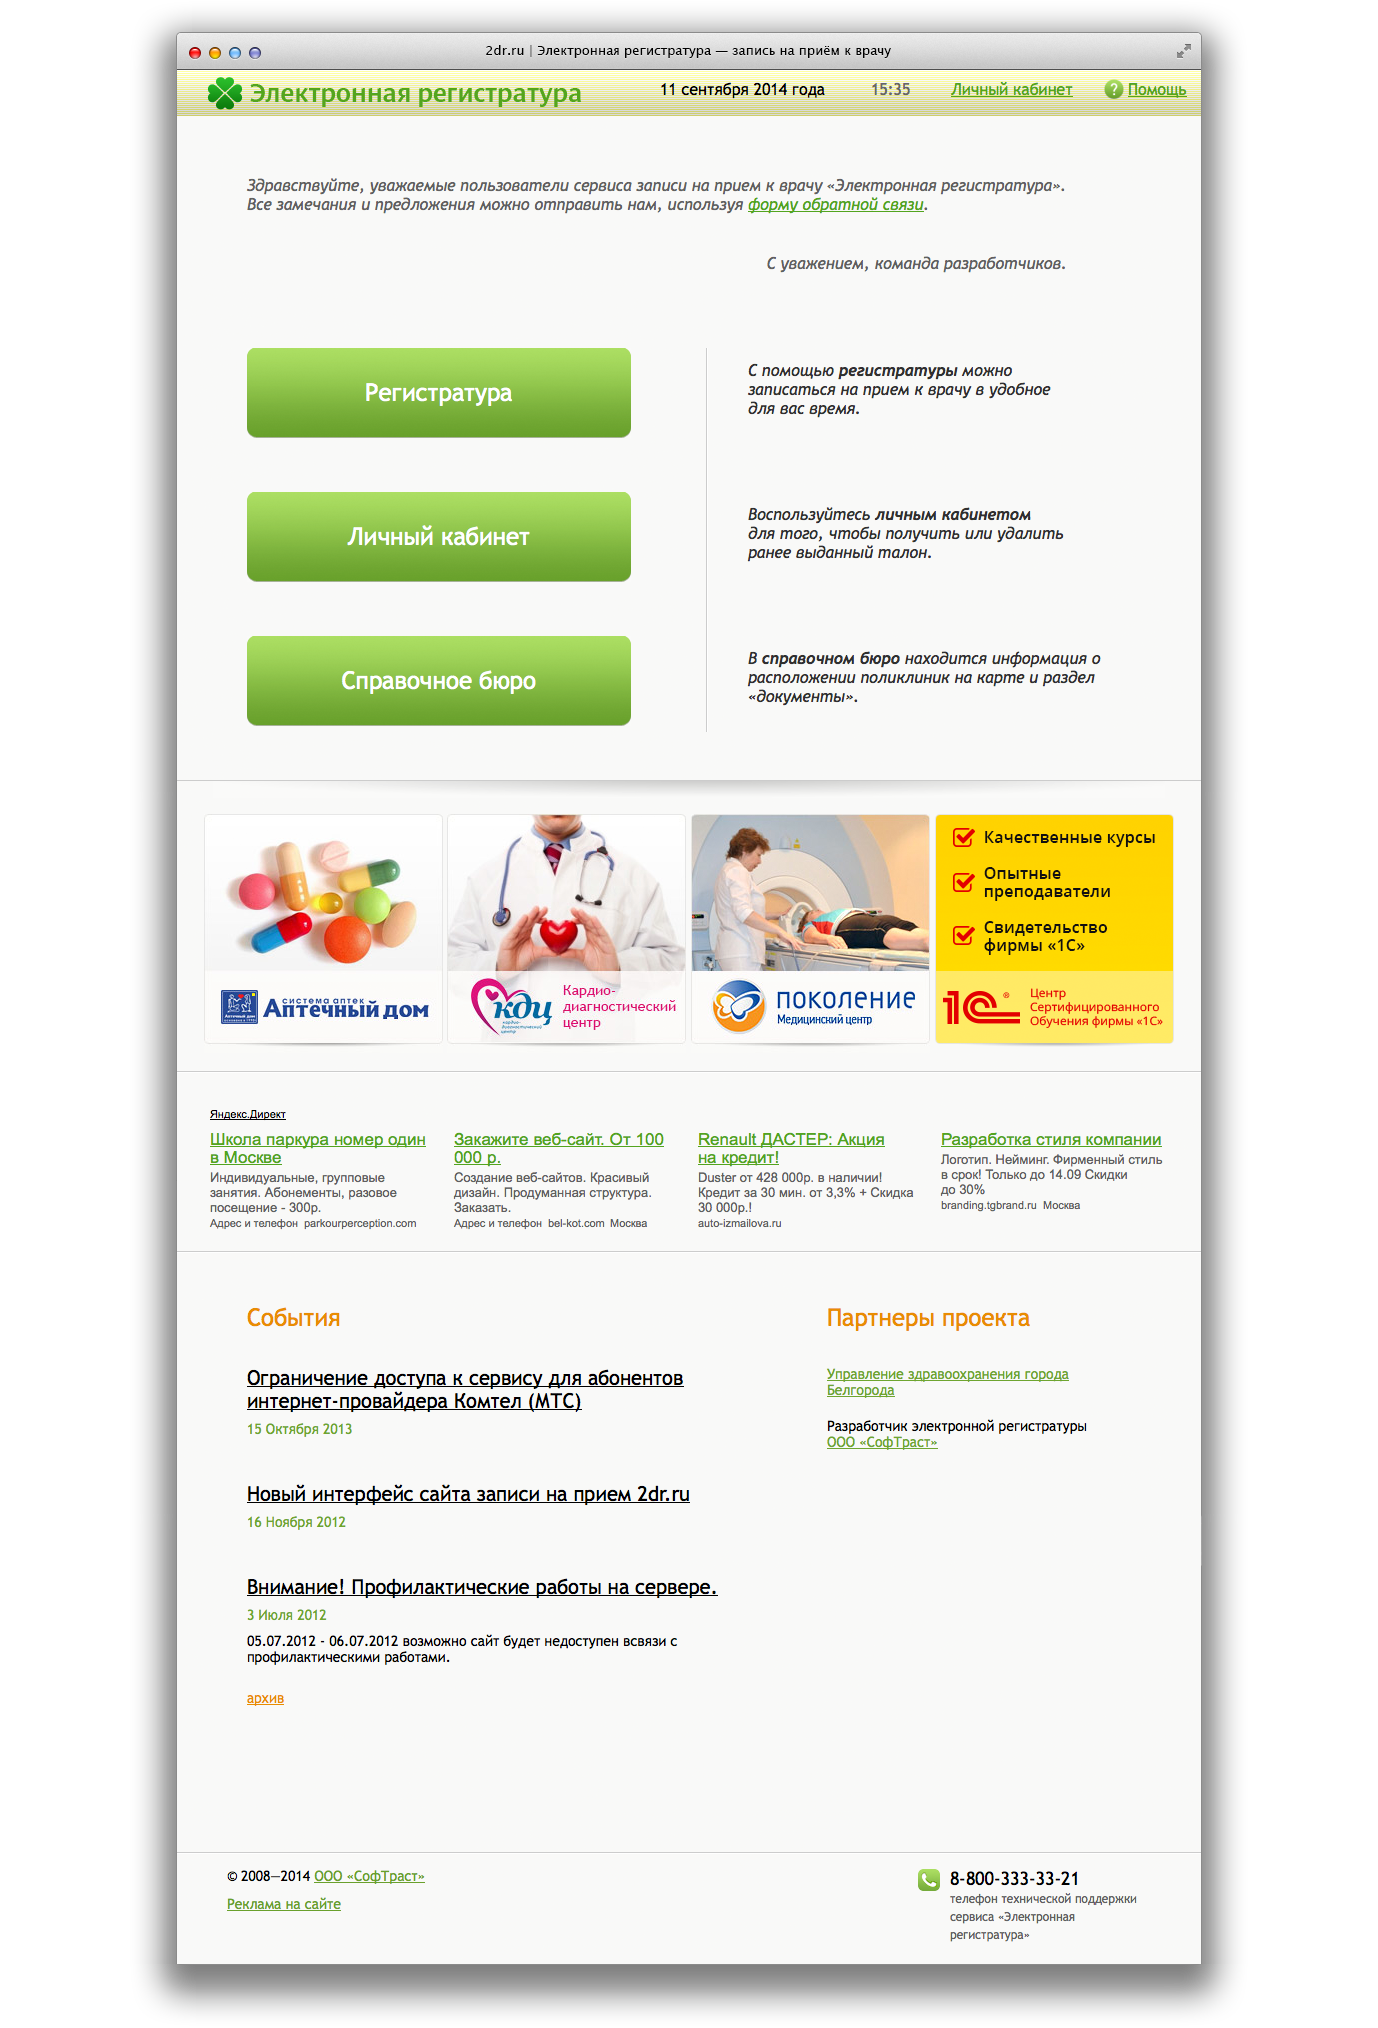 Главная страница сервиса 2dr.ru — Запись на приём к врачу через интернет